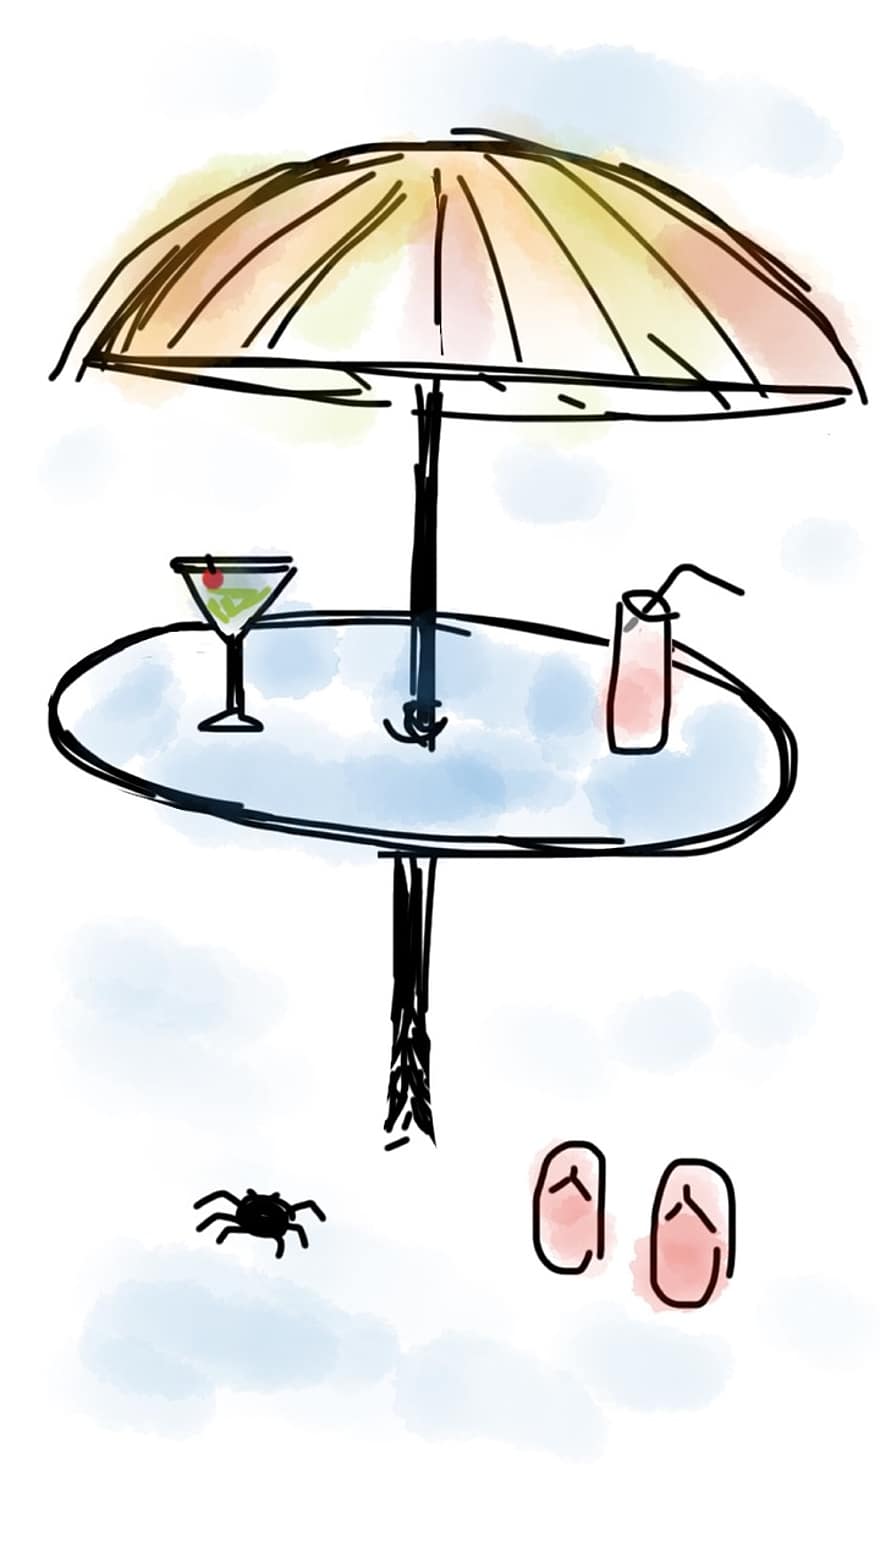 παραλία, ομπρέλα, ποτό, Μαρτίνι, αναψυκτικό, τραπέζι, ηλιόλουστος, ομπρέλα θαλάσσης, άμμος, διακοπές, καλοκαίρι